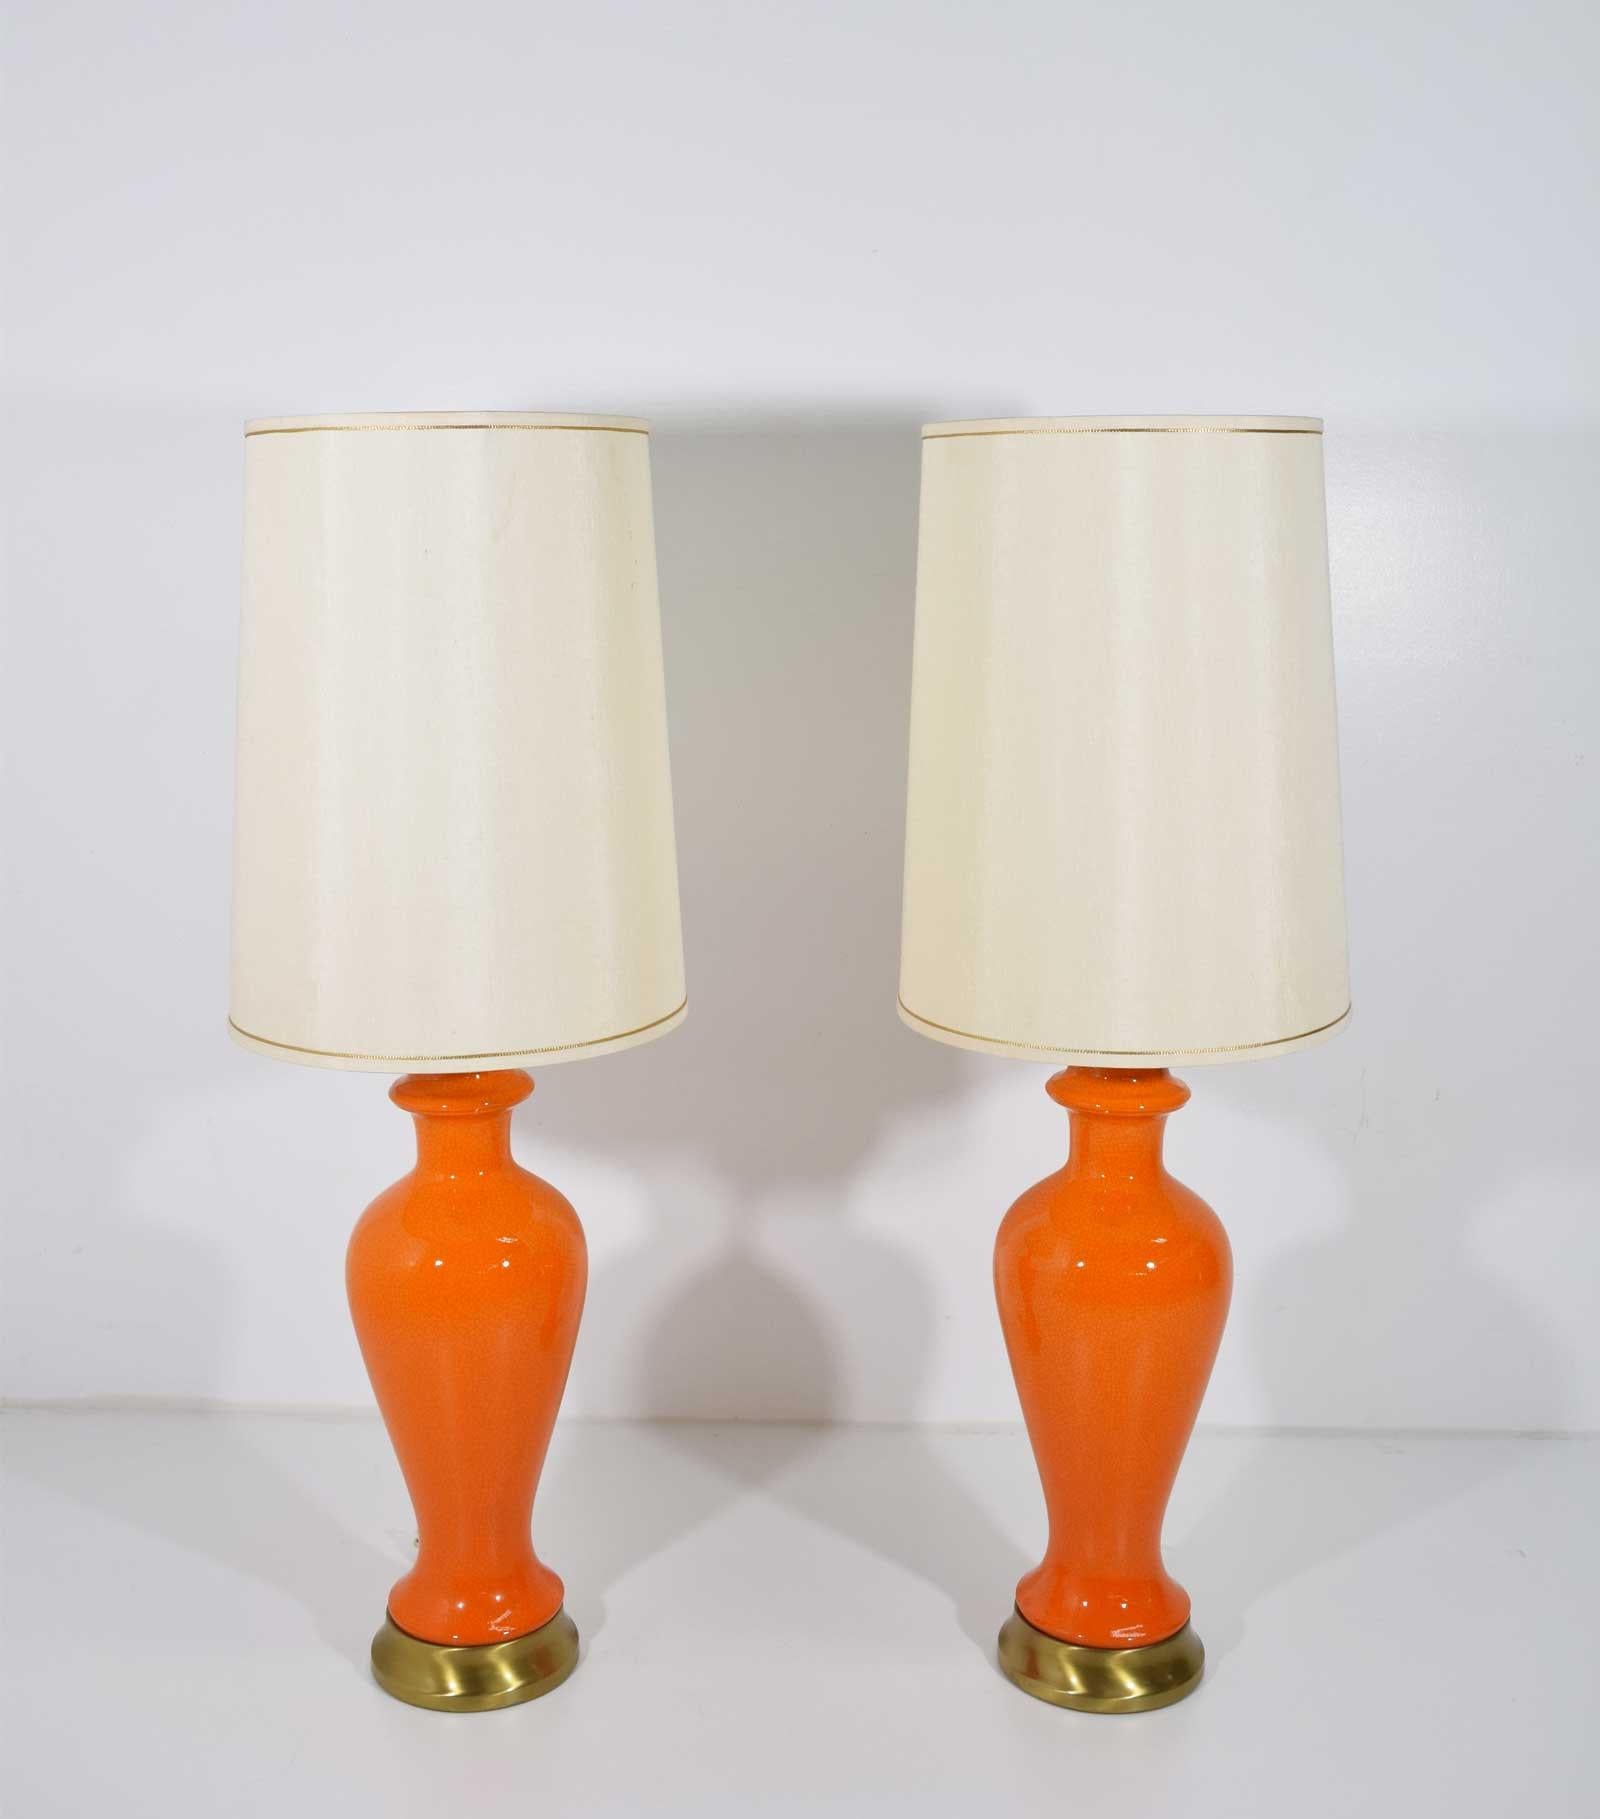 Une très belle paire de lampes de table modernes du milieu du siècle est en céramique craquelée. Orange vif. De jolies nuances qui semblent être de la soie. Les dimensions sont celles du haut de la harpe et le diamètre est celui de l'ombre.